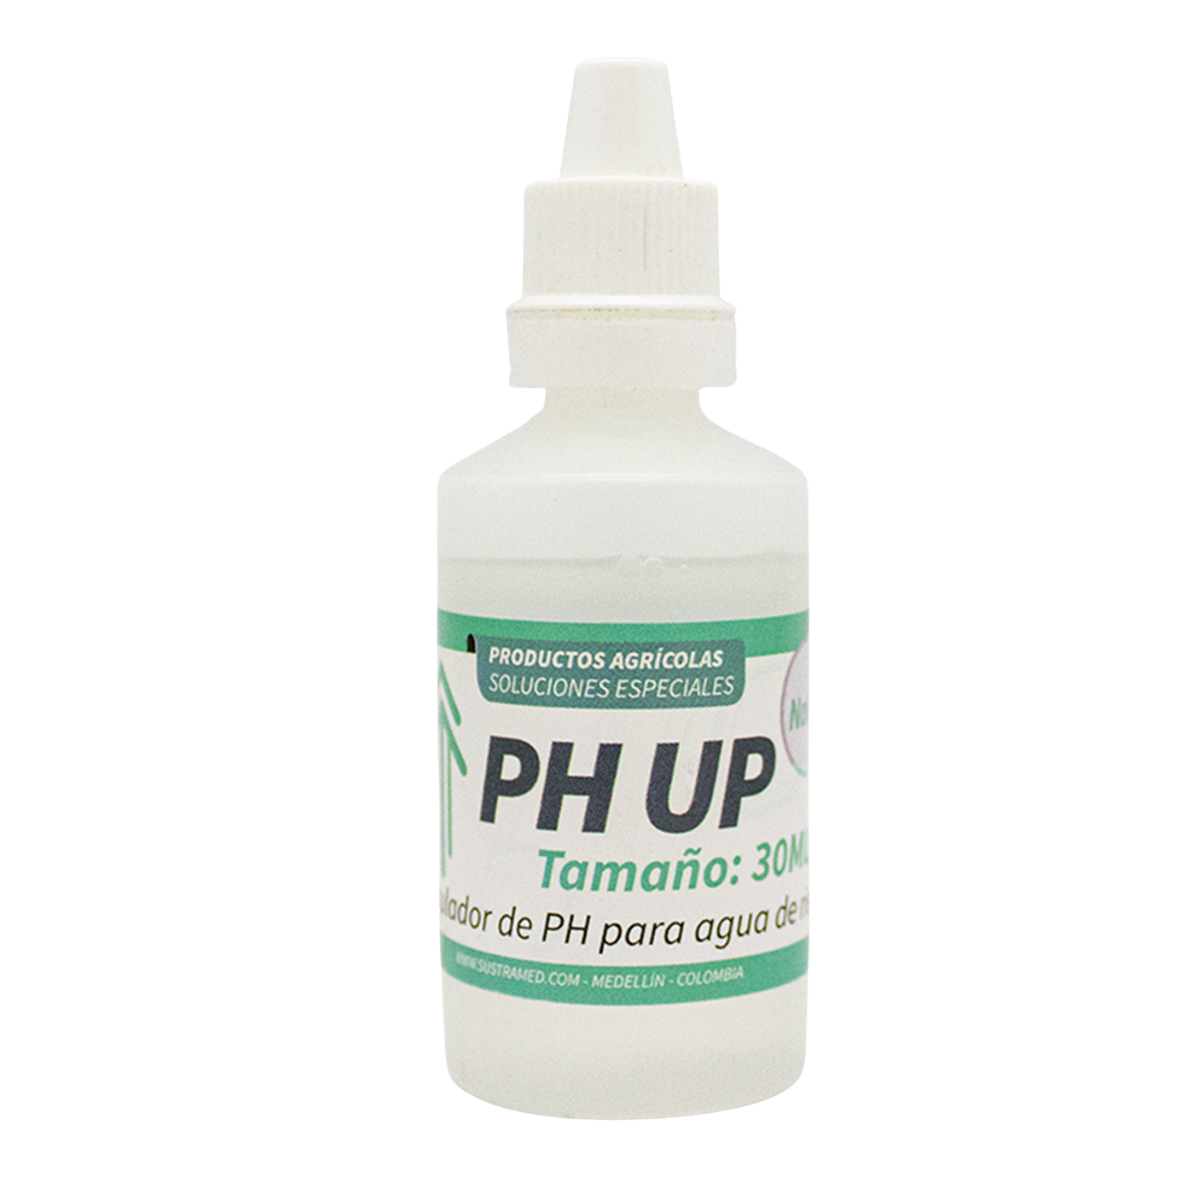 PH Up - Solución para subir PH